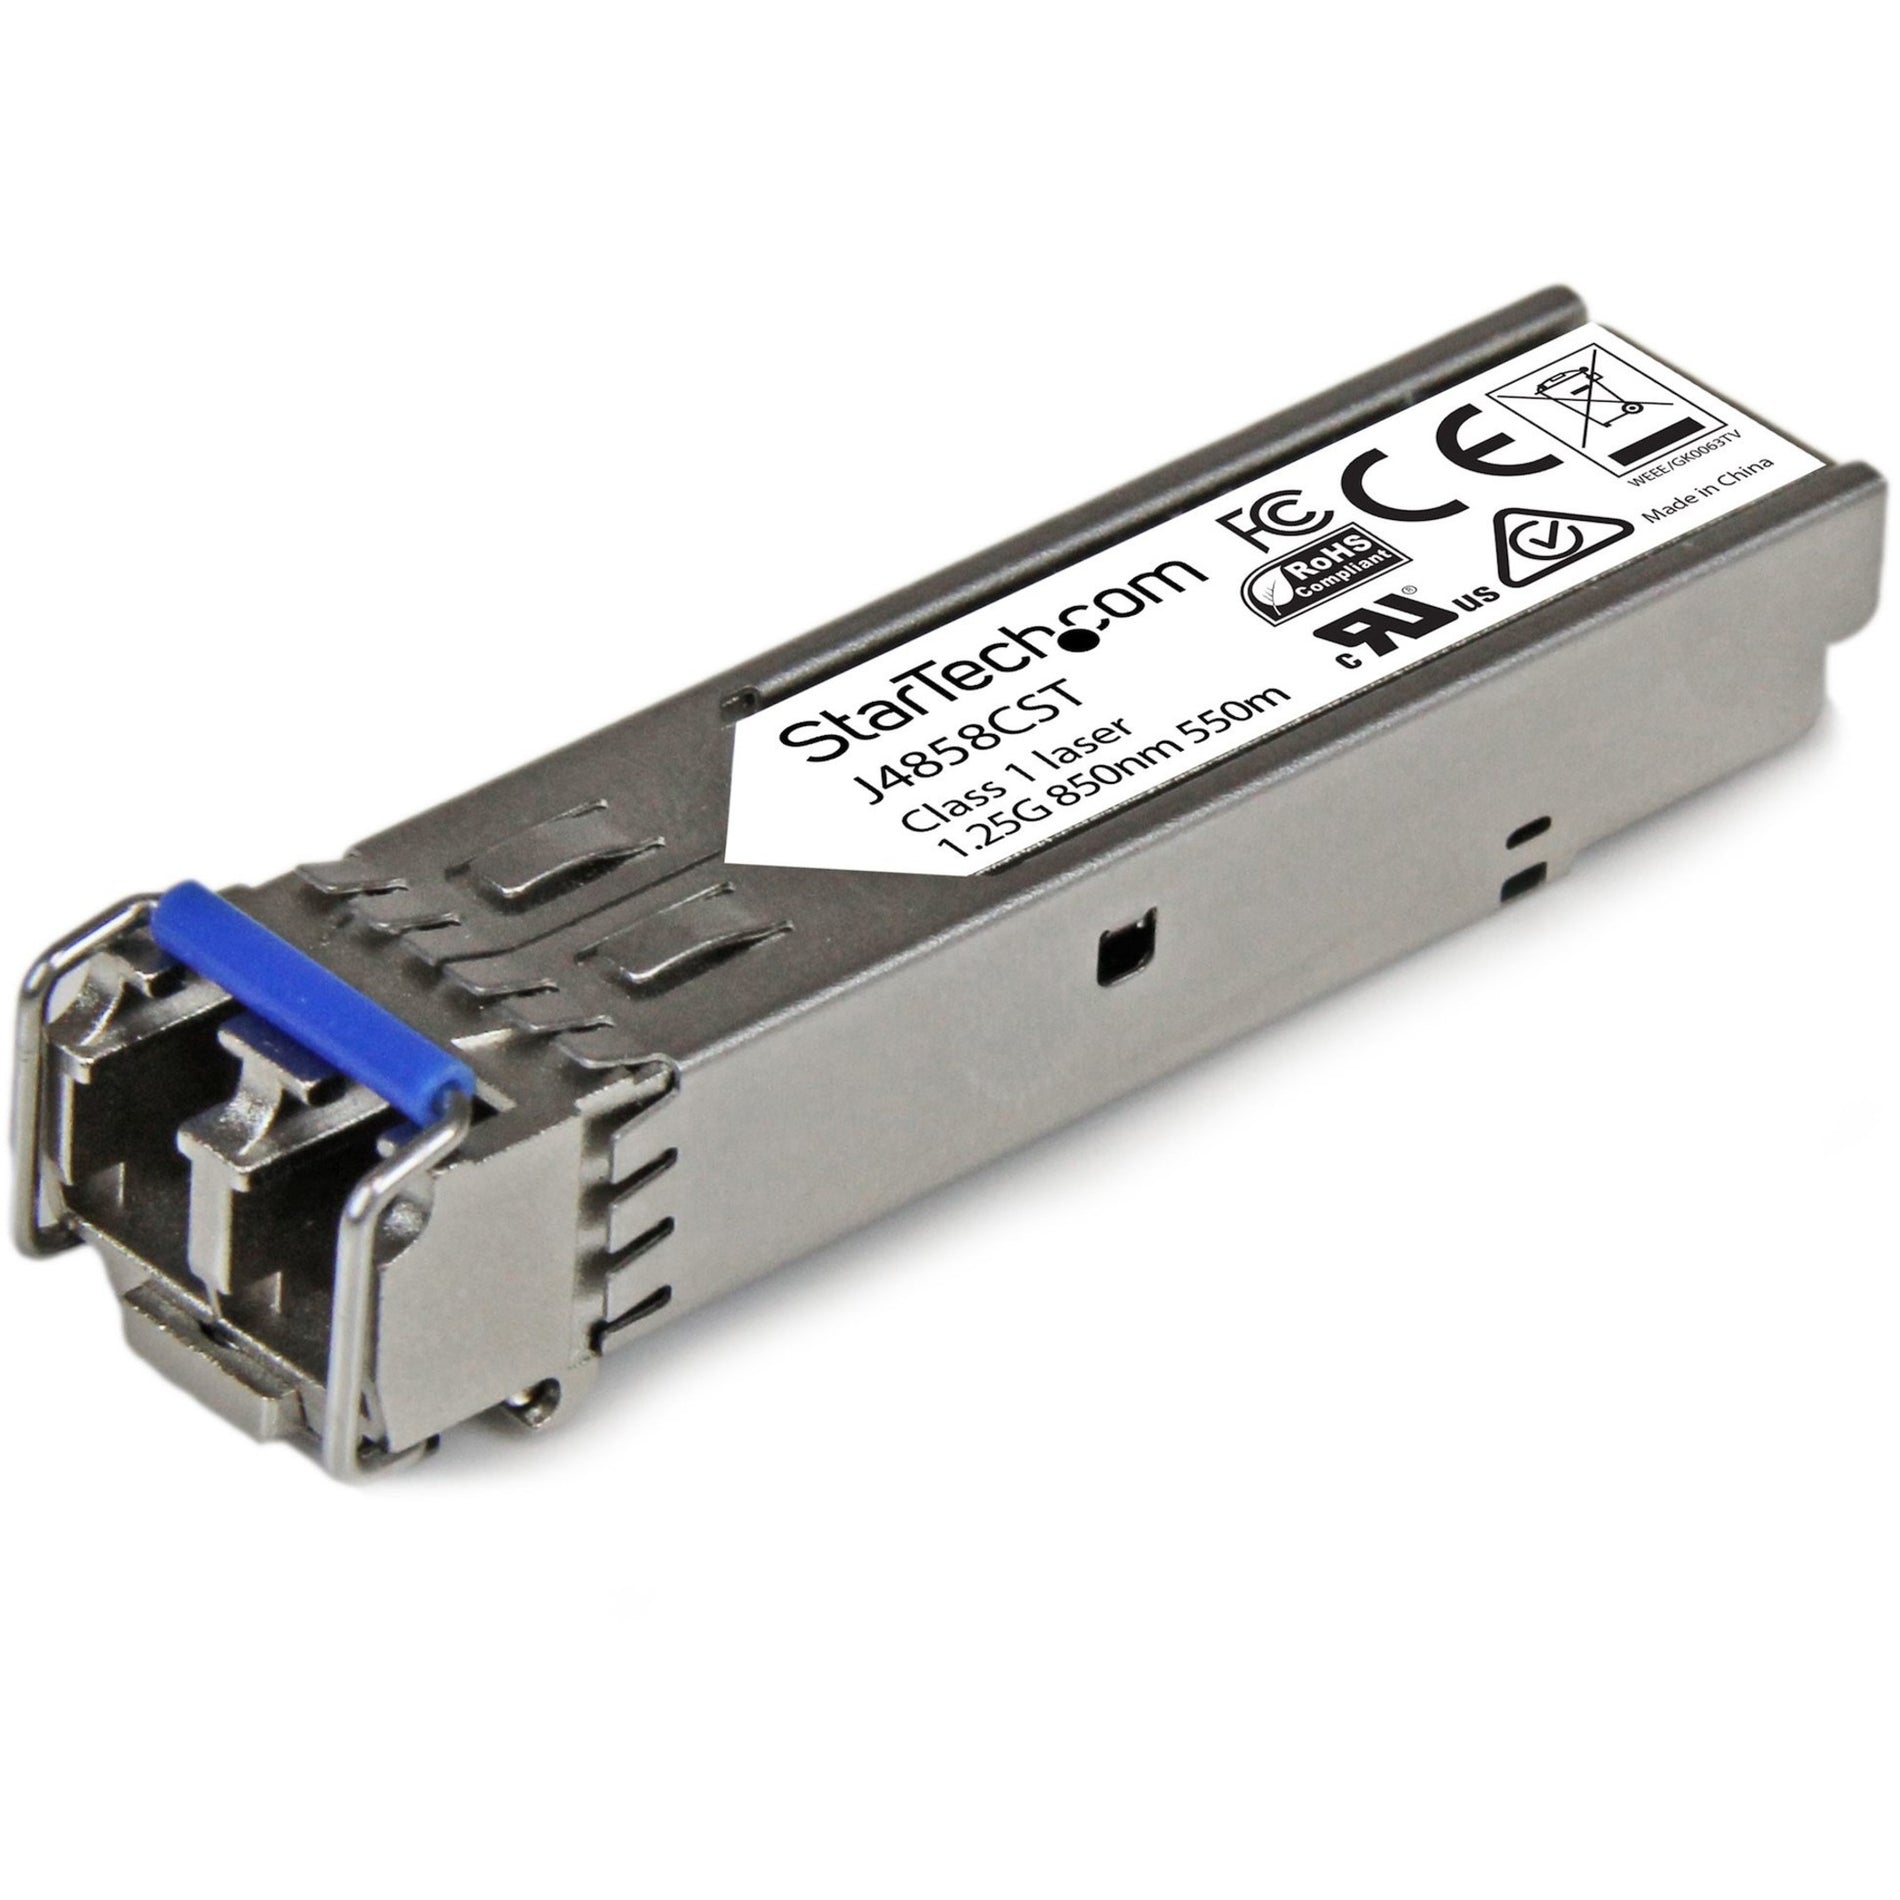 StarTech.com J4858CST Gigabit Fiber SFP Transceiver Module - HP J4858C Compatible - 1000Base-SX, Multi-mode, 550m